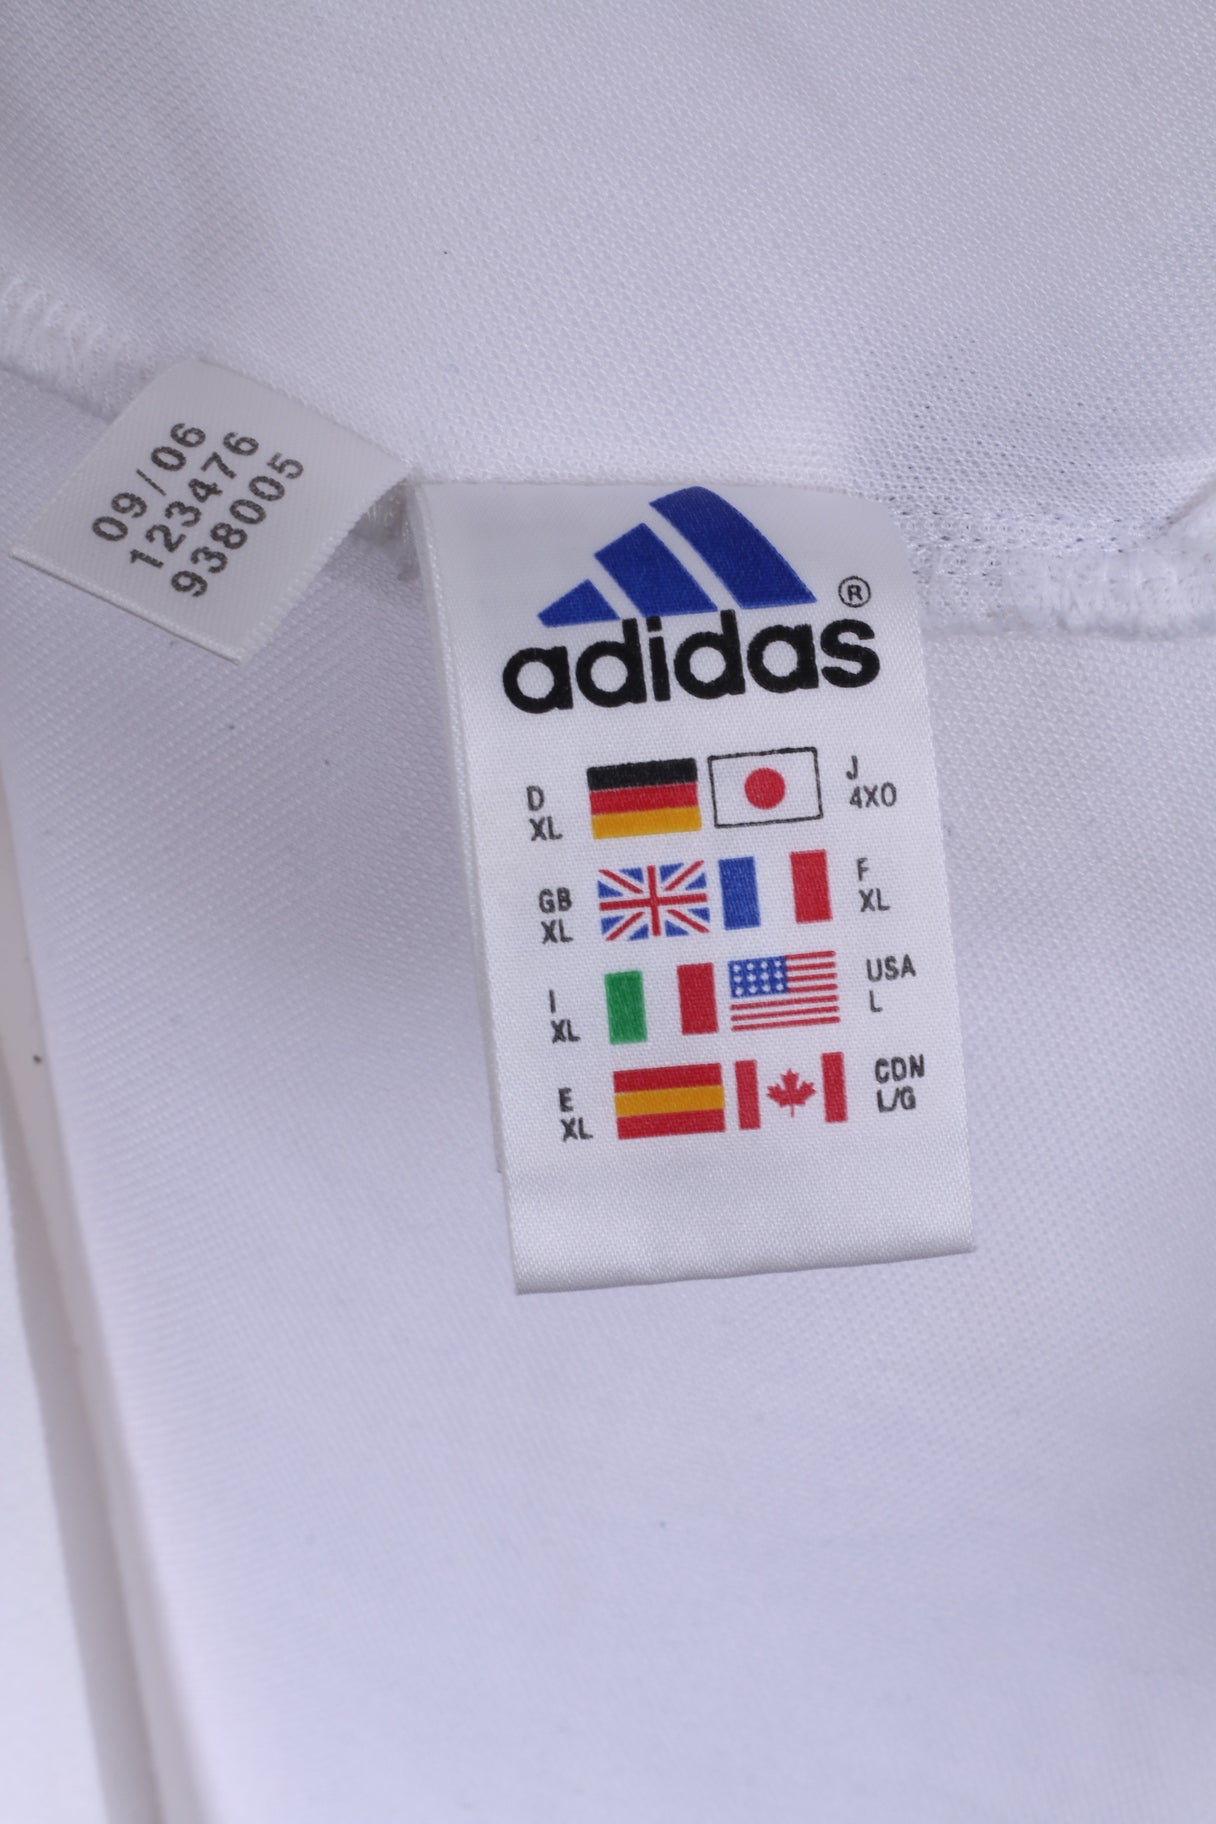 Adidas Polo XL Homme Blanc Climalite Stretch Cotton Trou en 1 gang